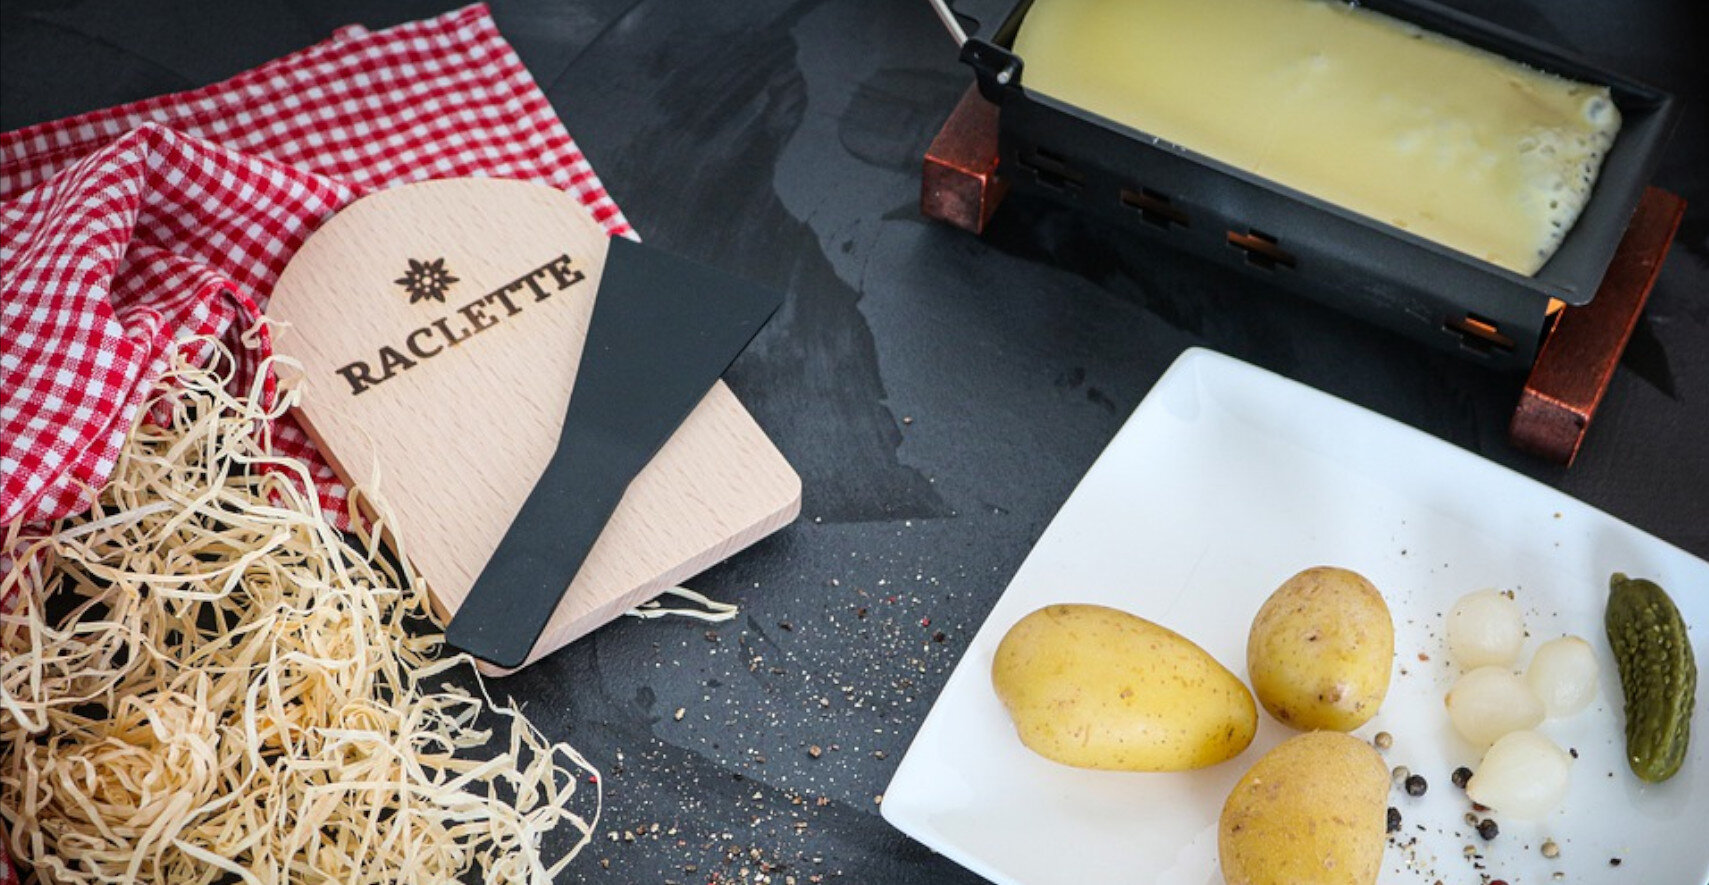 raclette-package.jpg